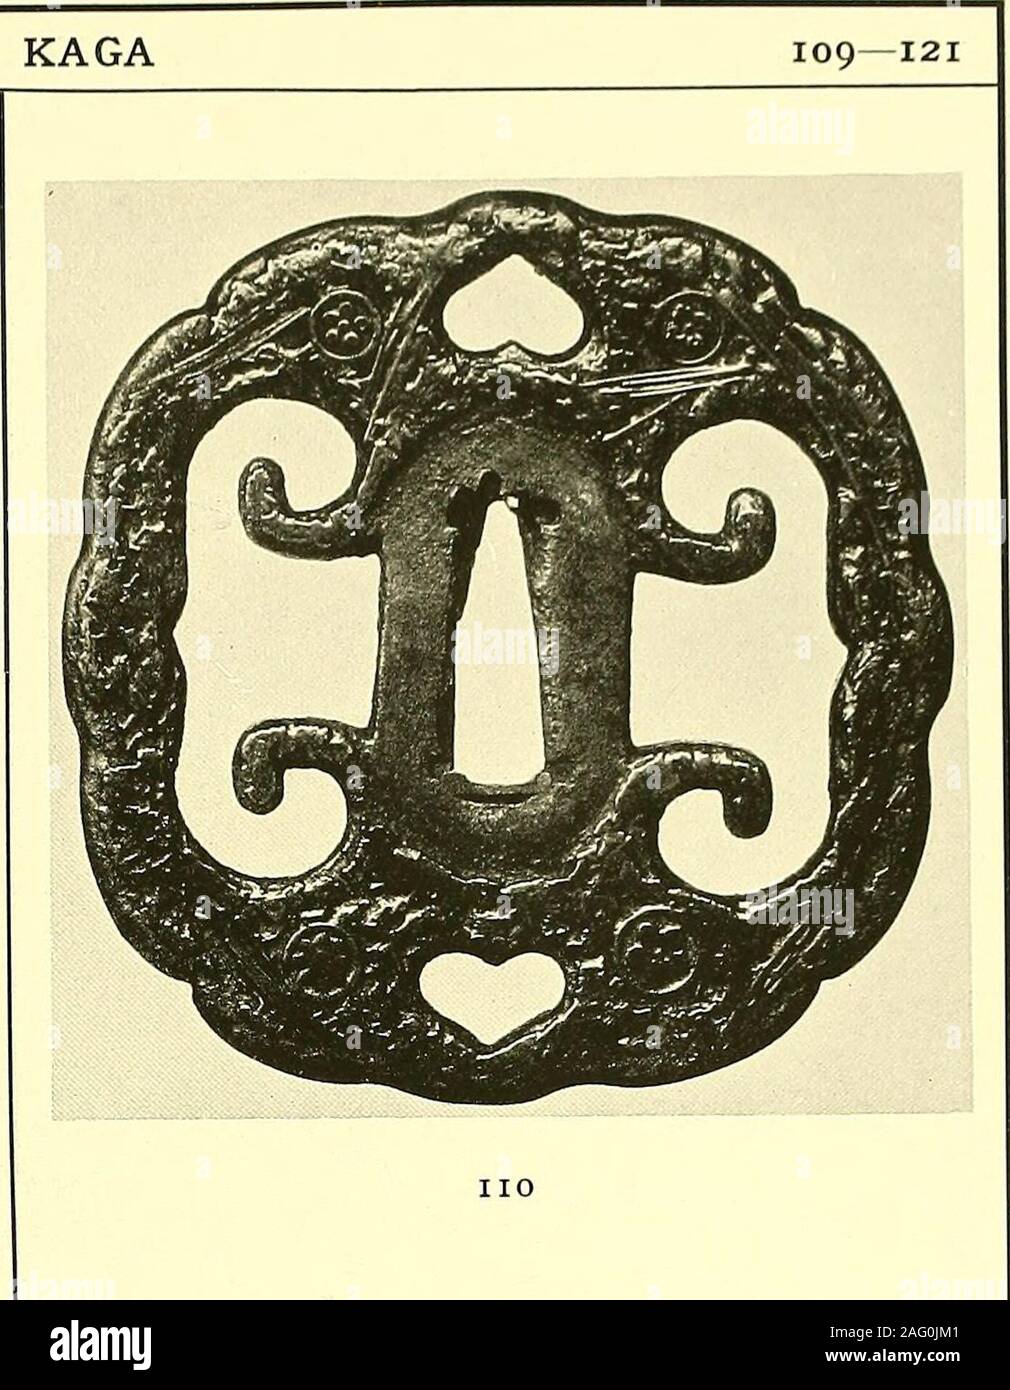 . Japanische StichblÃ¤tter und Schwertzieraten : Sammlung Georg Oeder, DÃ¼sseldorf : [Katalog]. ¶gan) bedeckt, da-zwischen kleine Wappenrunde. (Abb.) III TSUBA aus Eisen, mit gehackten Gelb-metallsplittern bedeckt (NunomezÃ¶-gan) , zwischen denen kleine Wappen-runde angebracht sind. 112 TSUBA aus ShakudÃ¶, mit gehacktenGelbmetallsplittern bedeckt (Nunome-zÃ¶gan) . 113 TSUBA aus Eisen, mit Stempel-Ein-drÃ¼cken im TembÃ¶stil und gehacktenGelbmetallstÃ¼ckchen bedeckt (Nu-nomezÃ¶gan) . 114 TSUBA aus Eisen, mokkÃ¶fÃ¶rmig, mitflachen Einlagen von gelber Bronzein der Art gemaserten Holzes. 115 TSUBA Stock Photo